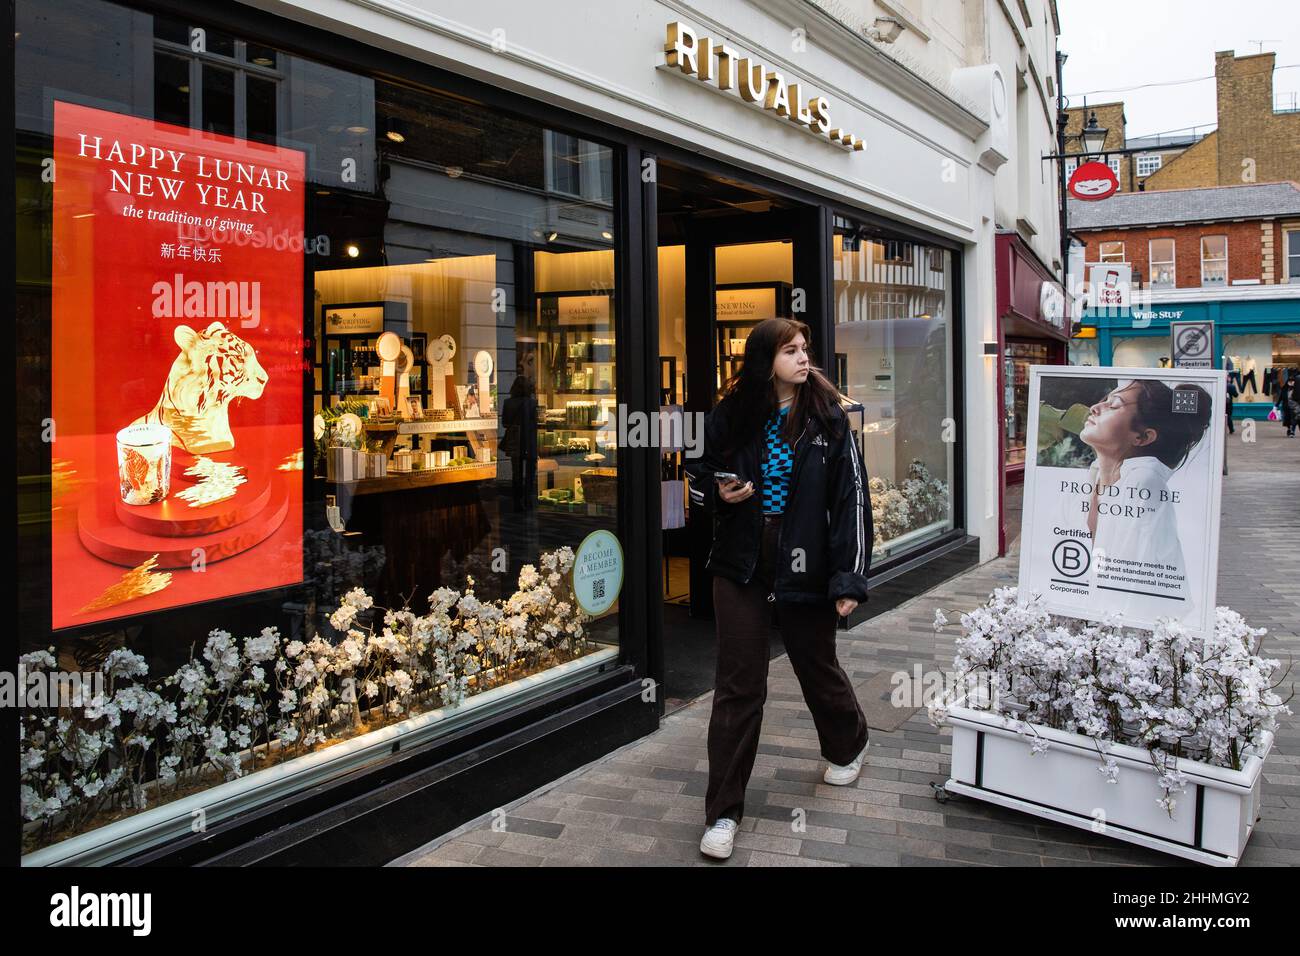 Kingston upon Thames, Royaume-Uni.24th janvier 2022.Une personne qui tient un téléphone portable passe devant un magasin et affiche un message du nouvel an lunaire heureux.Le Banque D'Images